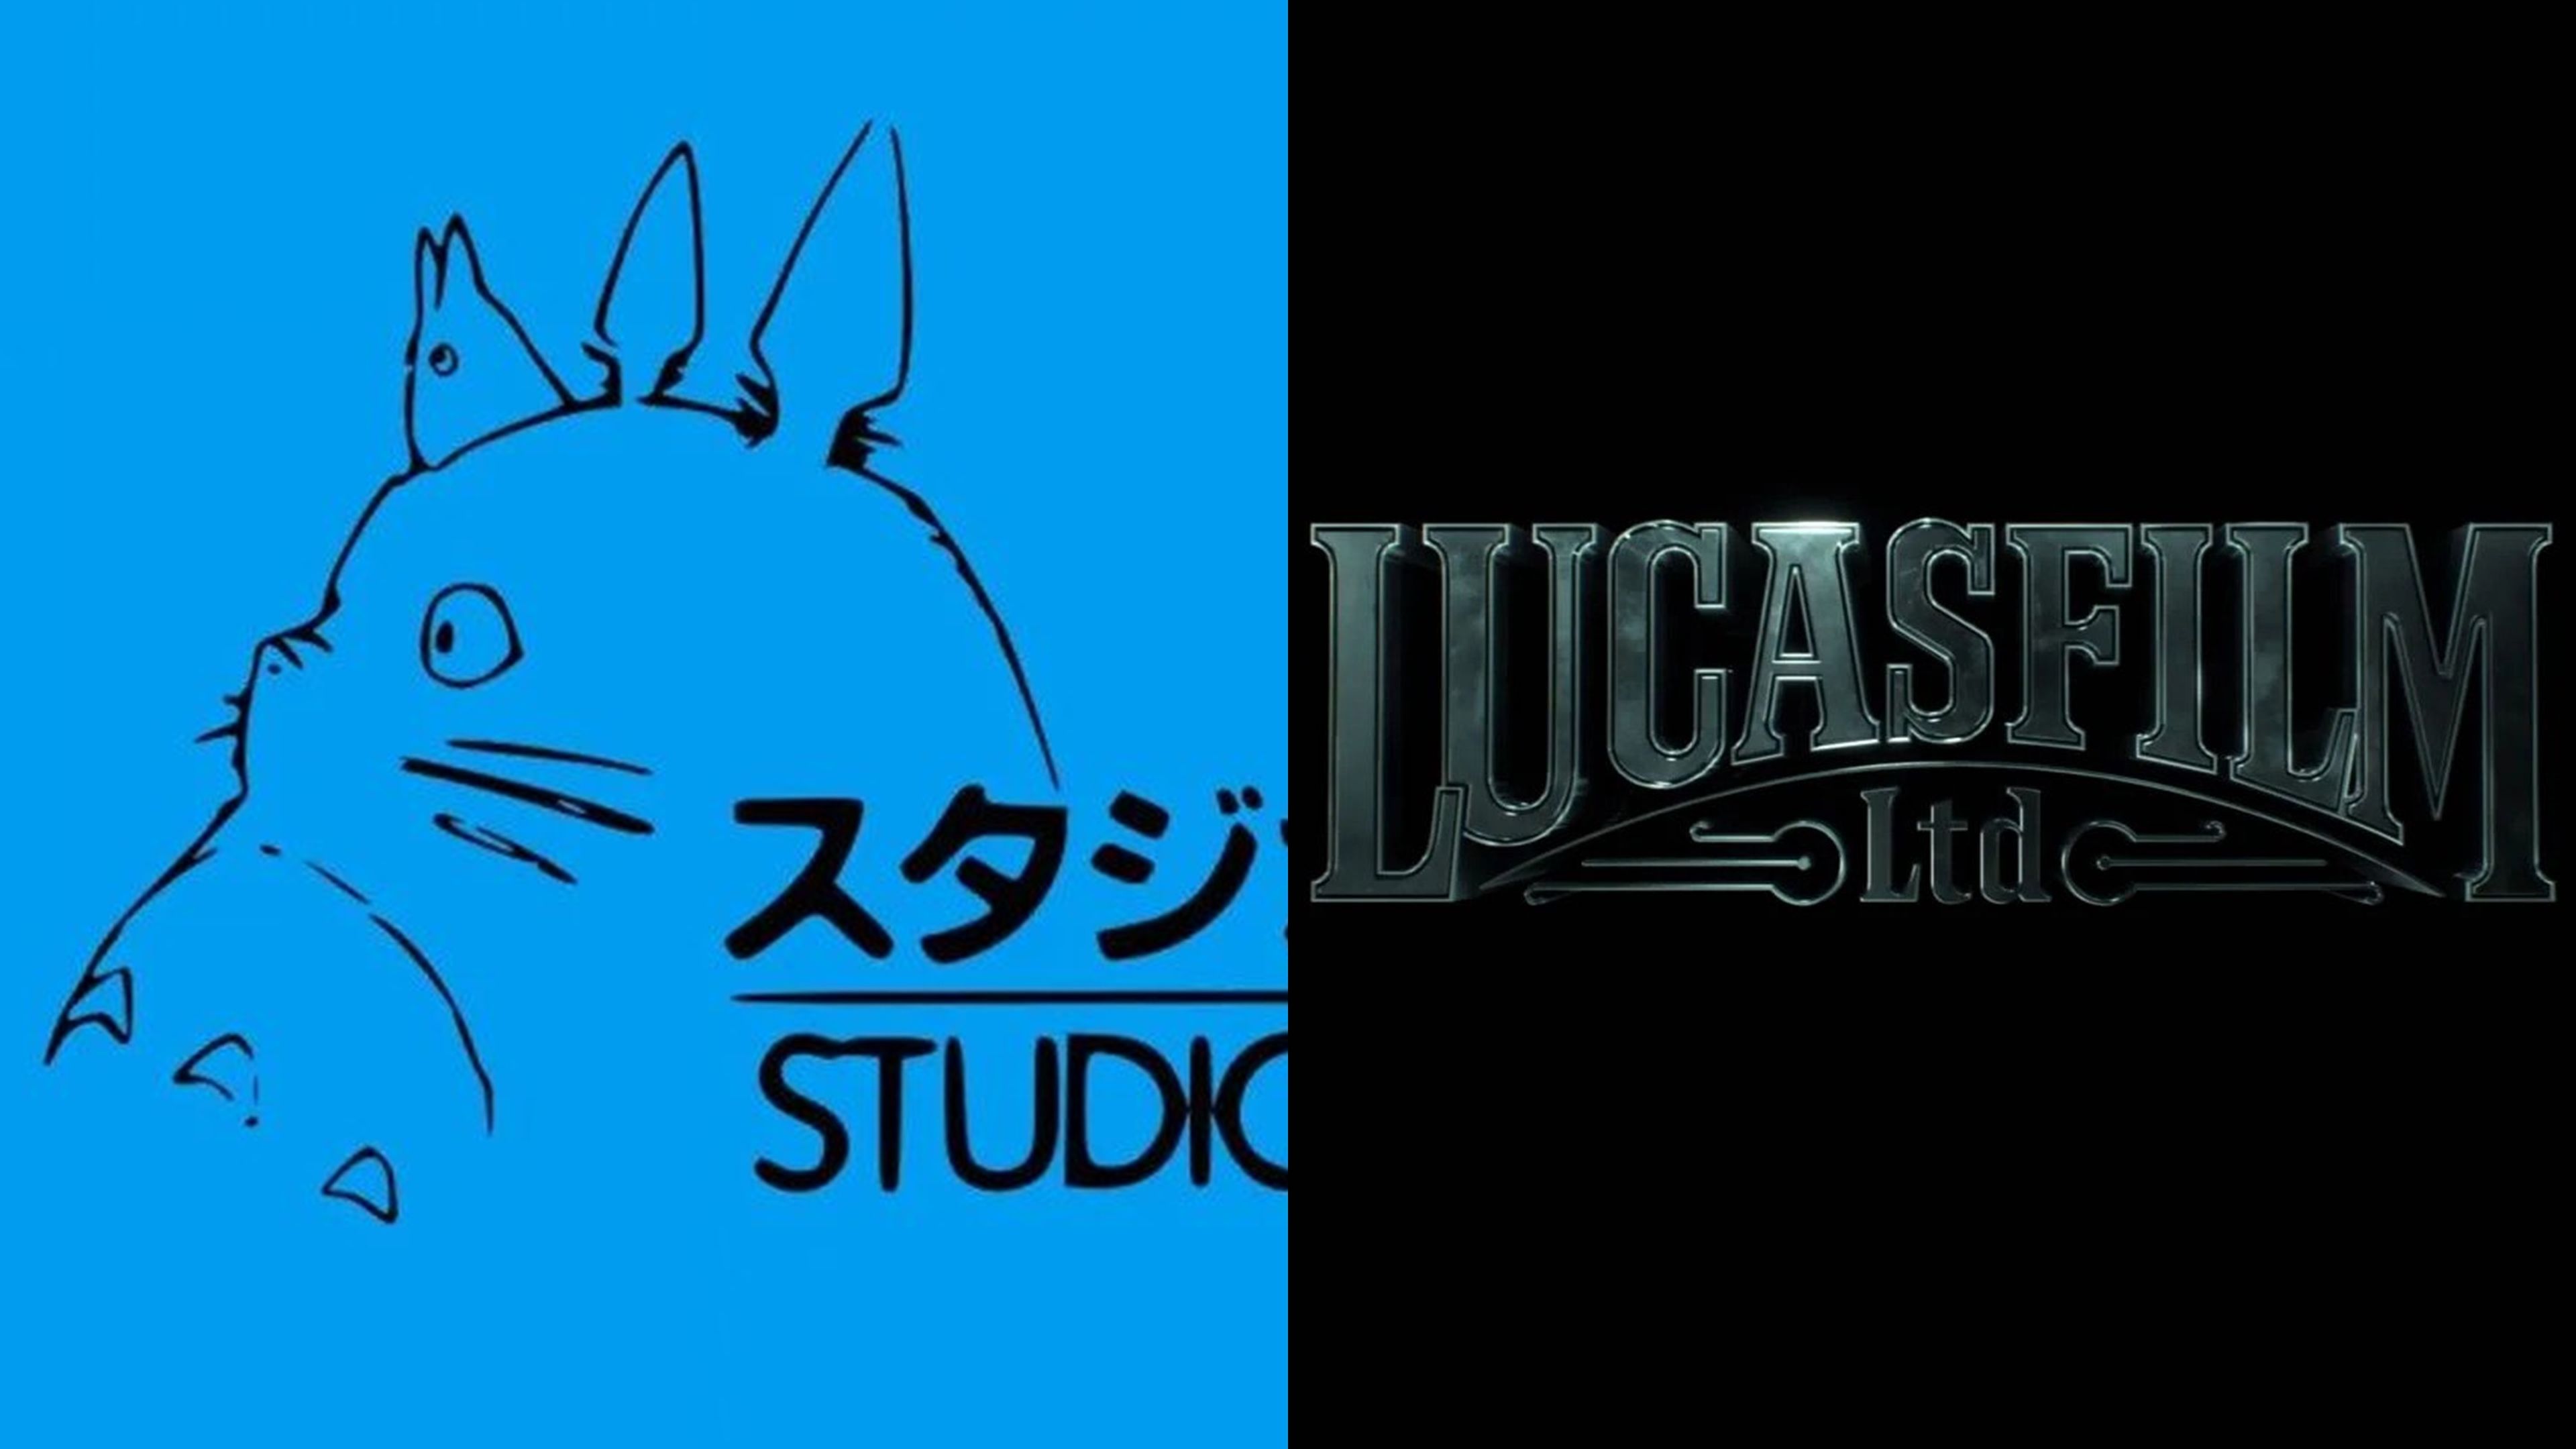 Studio Ghibli anuncia una colaboración con Lucasfilm en un nuevo proyecto